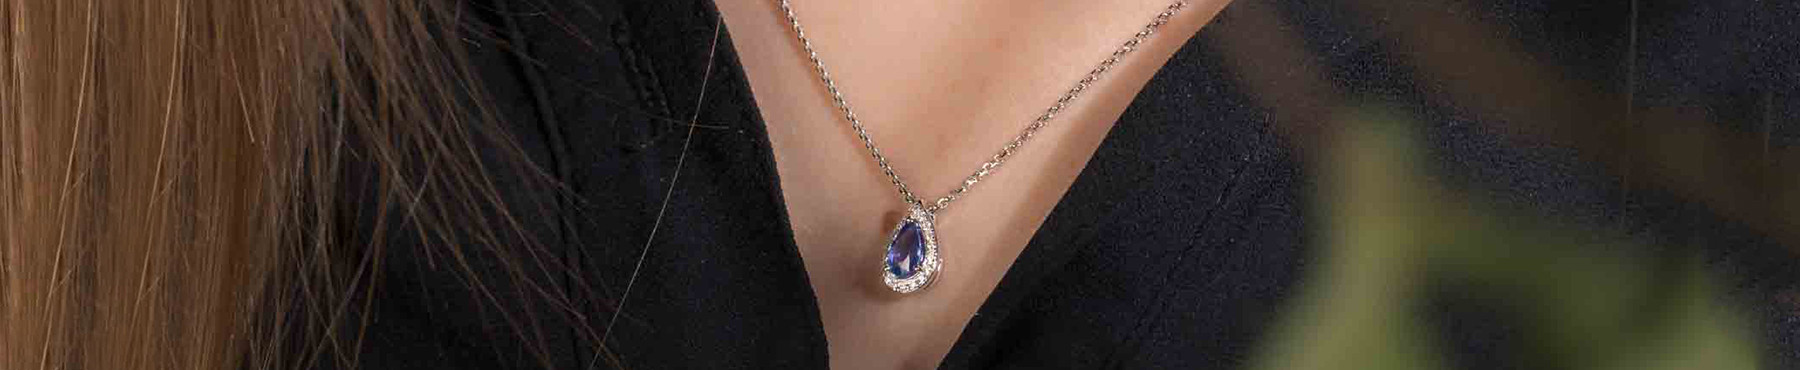 Women's gemstone necklaces